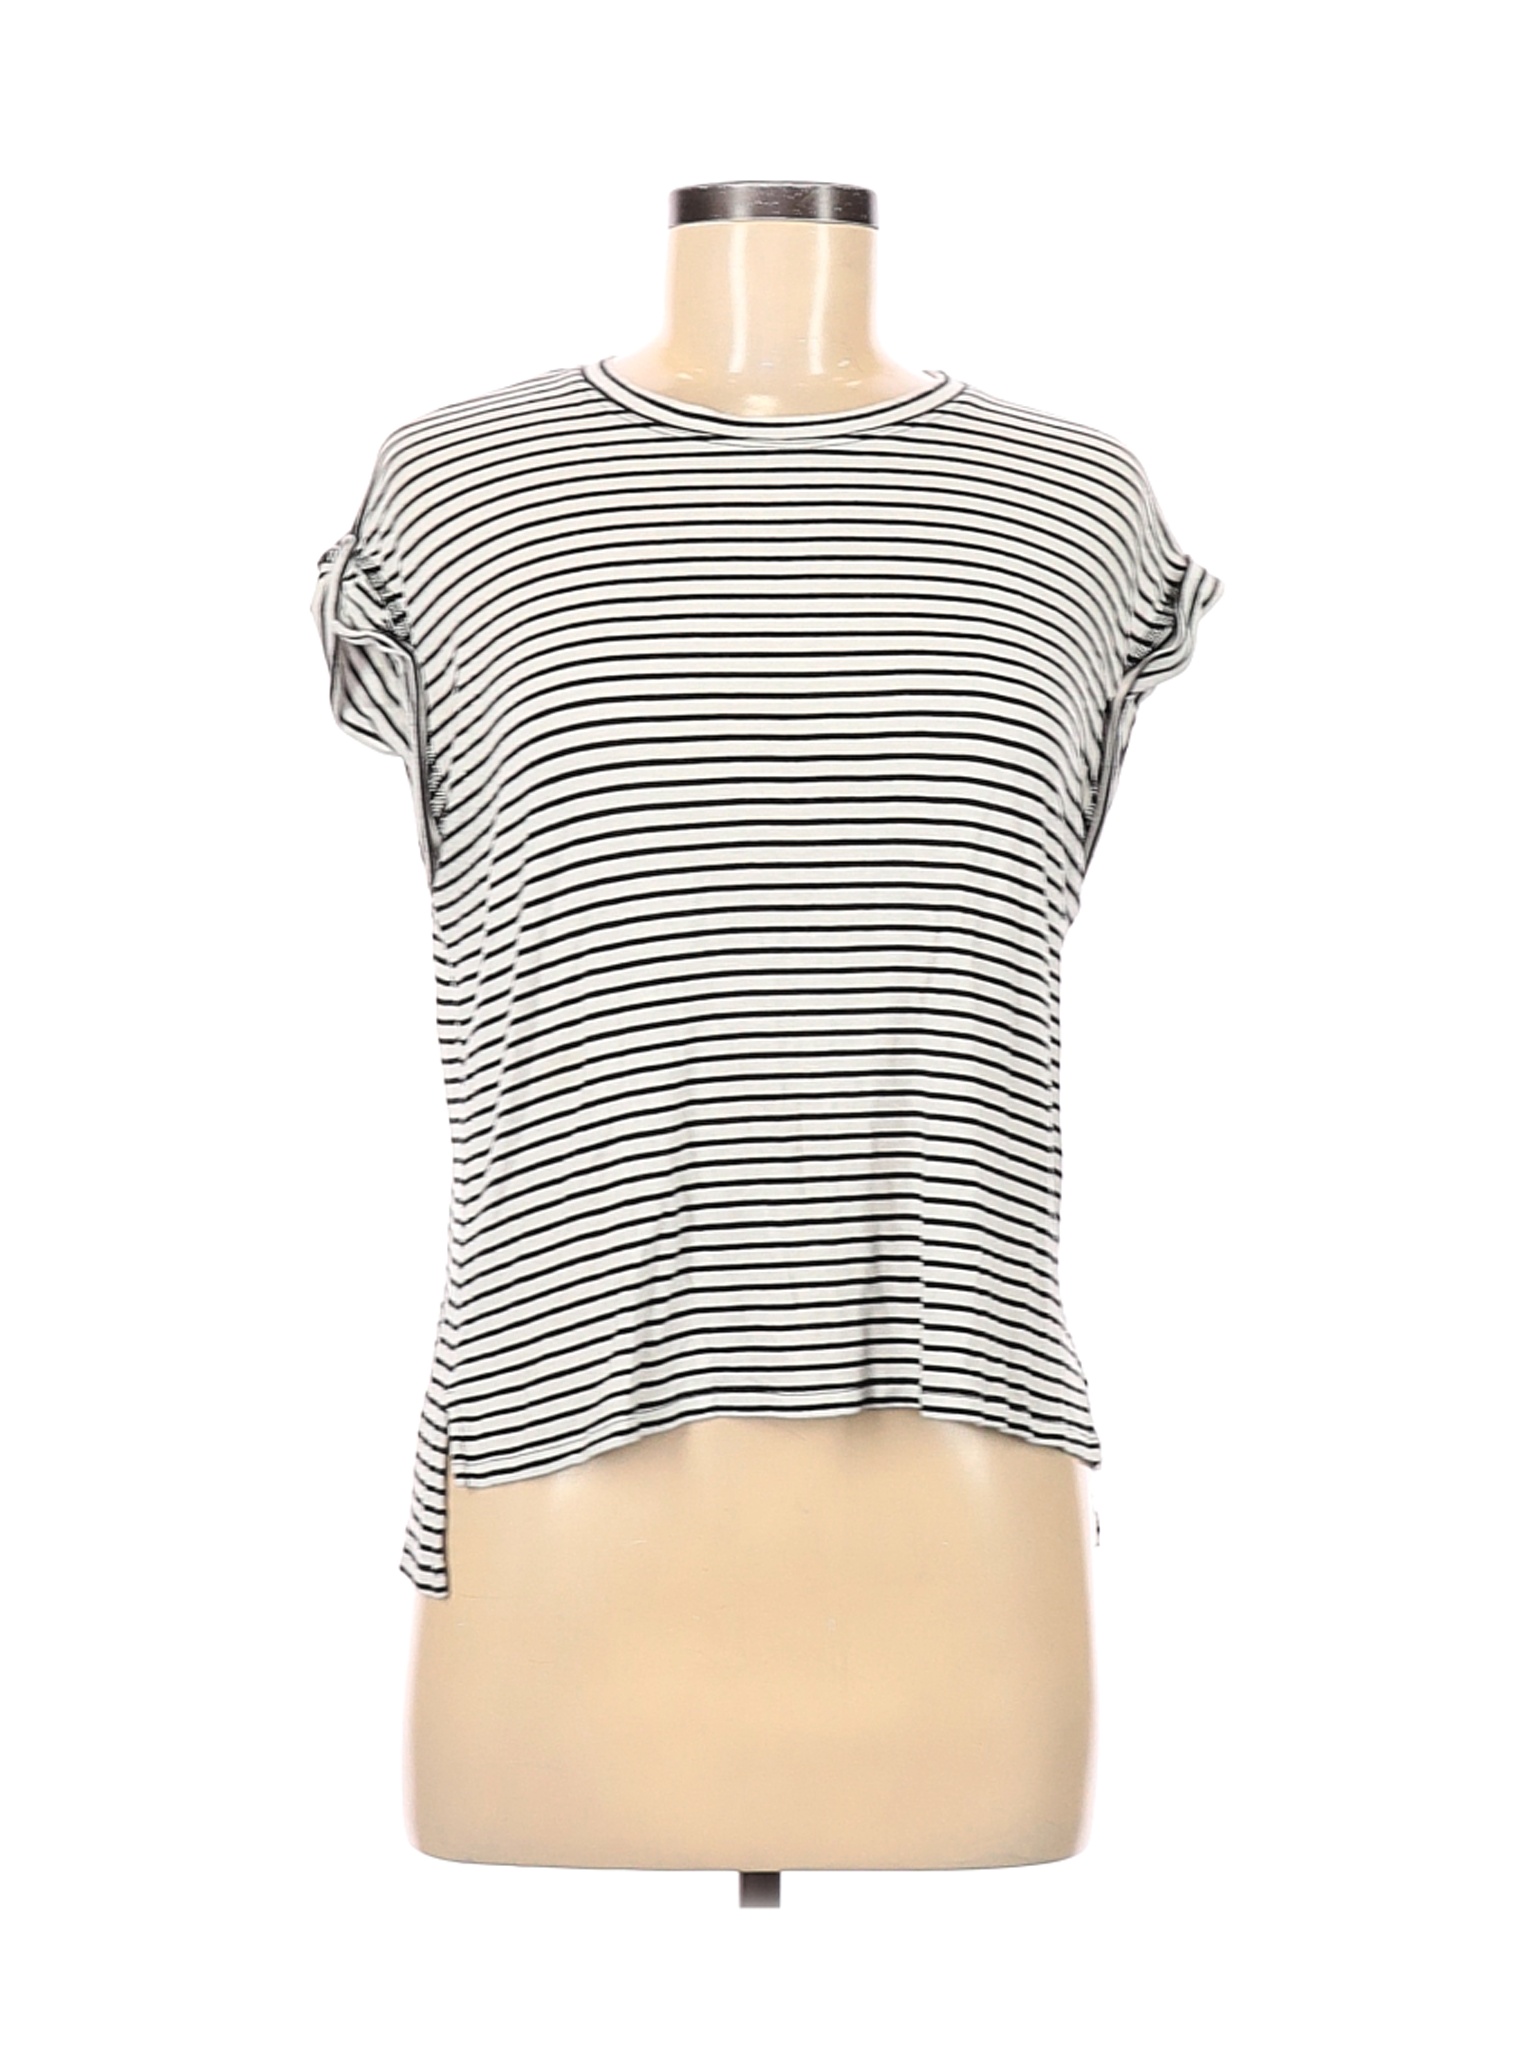 C&C California Women White Short Sleeve T-Shirt M | eBay